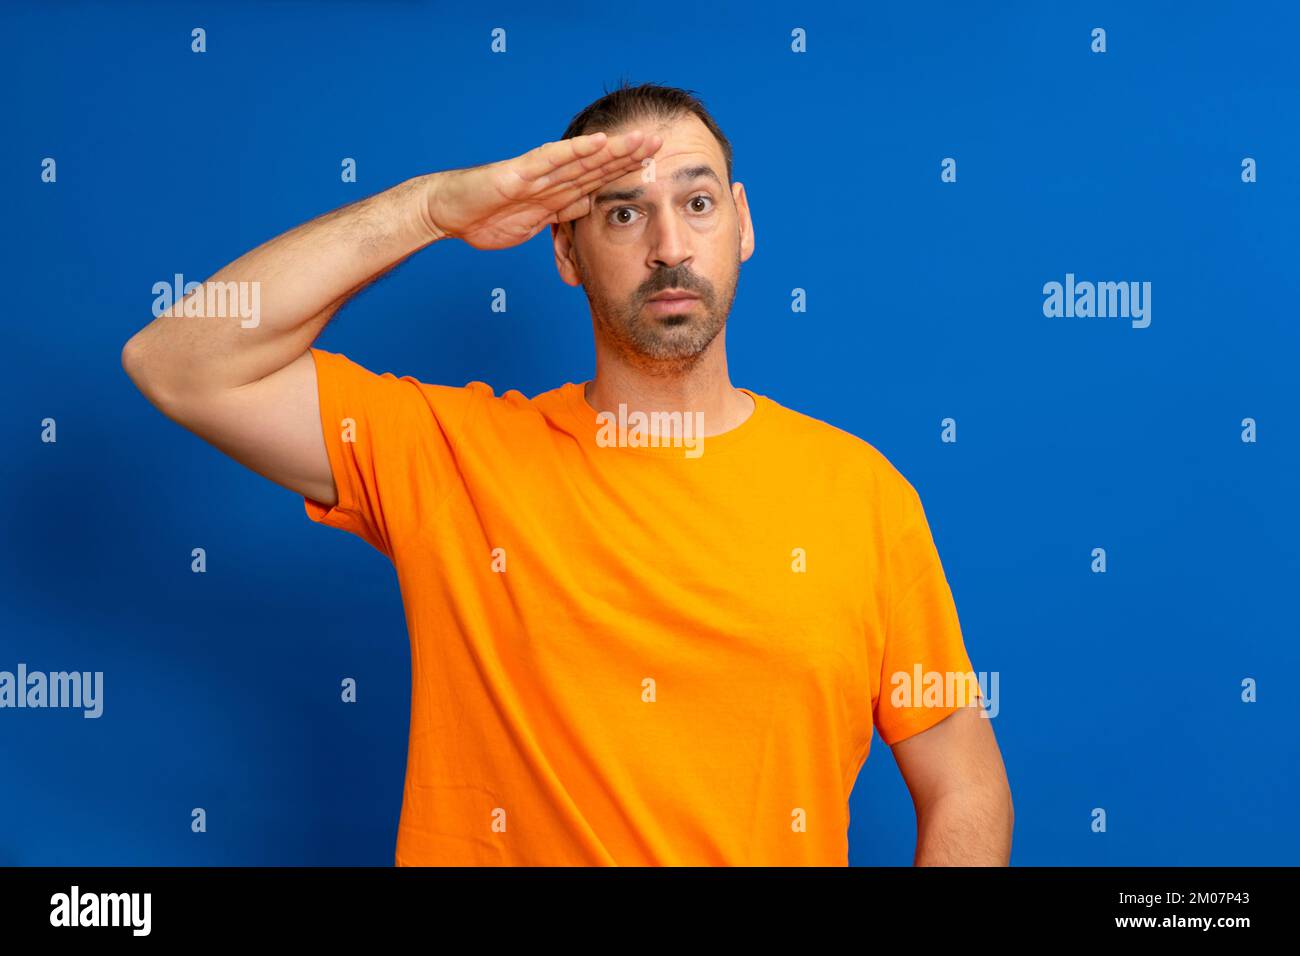 Ein Mann in Grußstellung und ernstem Gesicht. Ein lateinamerikanischer Mann mit einem Bart, der ein orangefarbenes T-Shirt trägt, isoliert auf blauem Hintergrund Stockfoto